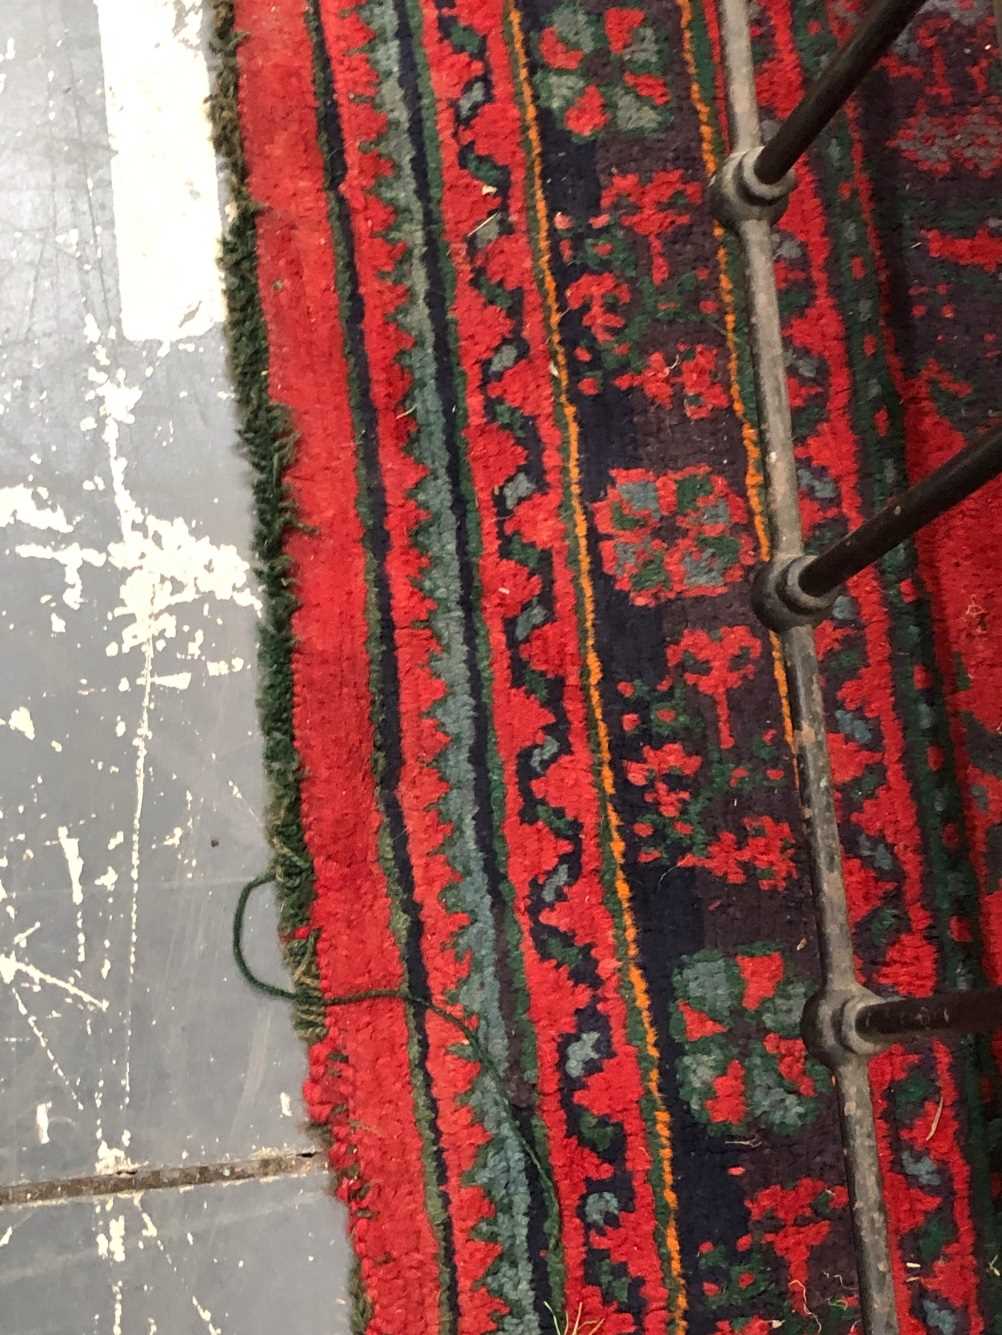 Turkish Oushak rug Measurements 264 x 188cms. - Image 7 of 18